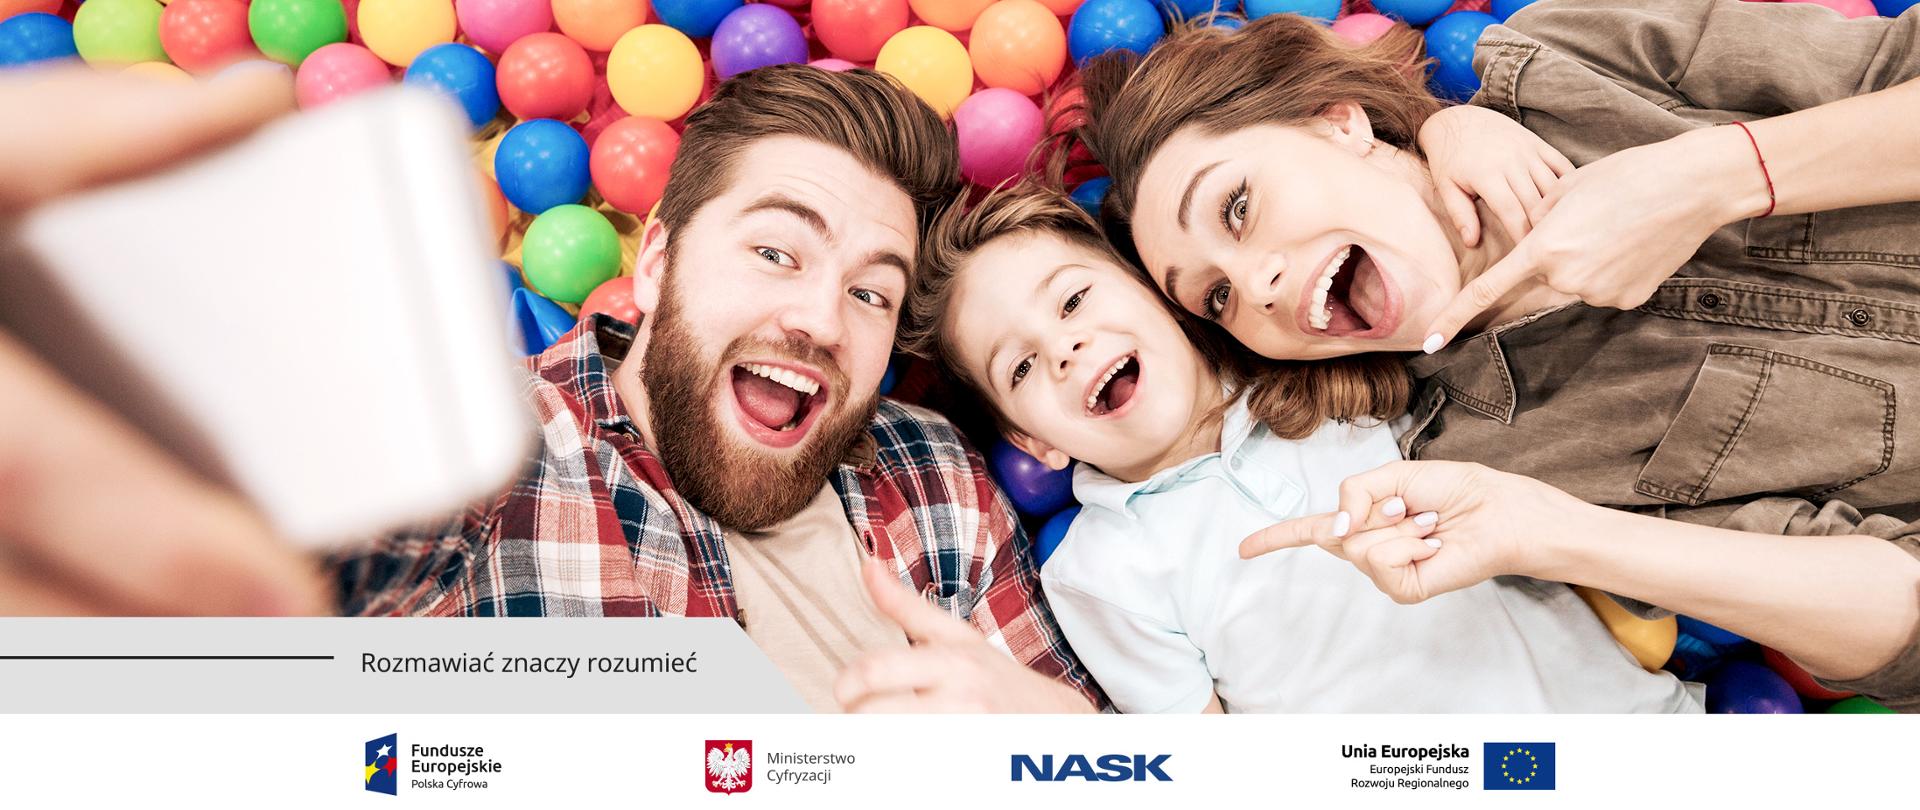 Leżący na kolorowych kulkach uśmiechnięci rodzice i dziecko robią sobie selfie,